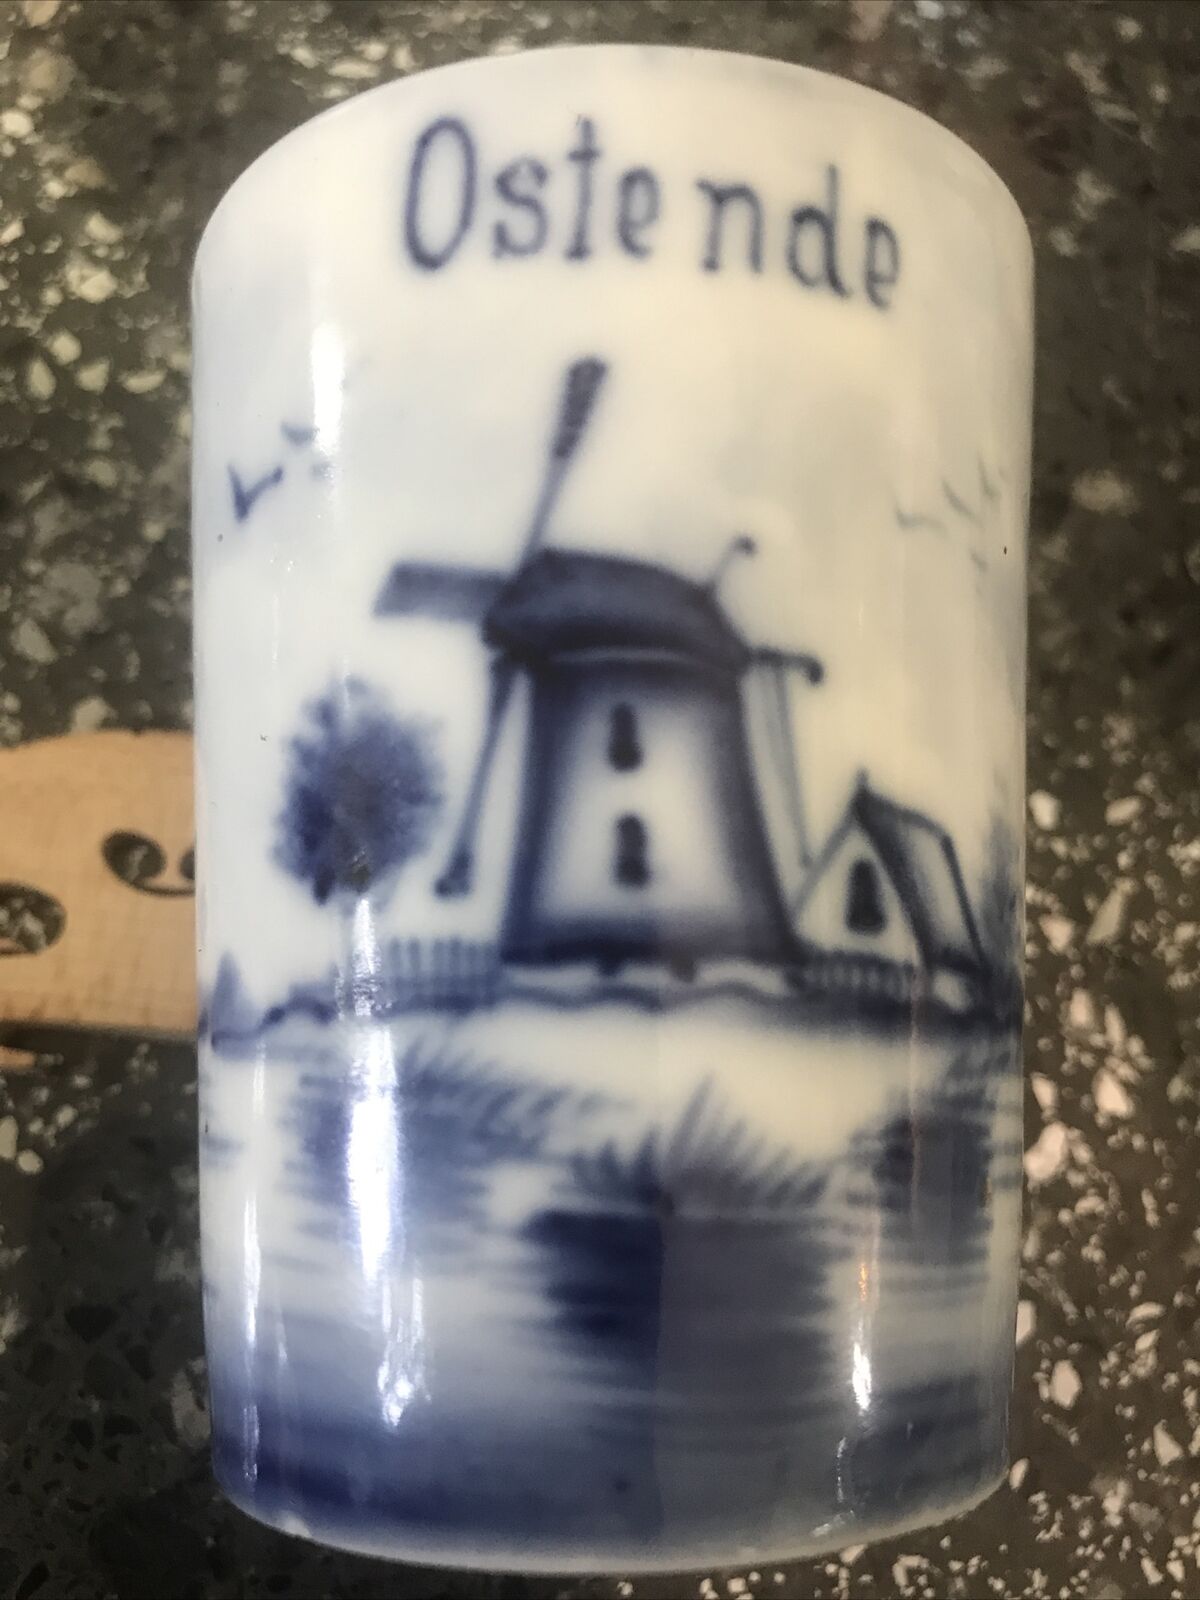 Vintage Delft  Blue Cigarette Holder Cup  0stende  Windmills Sailboats Birds 007